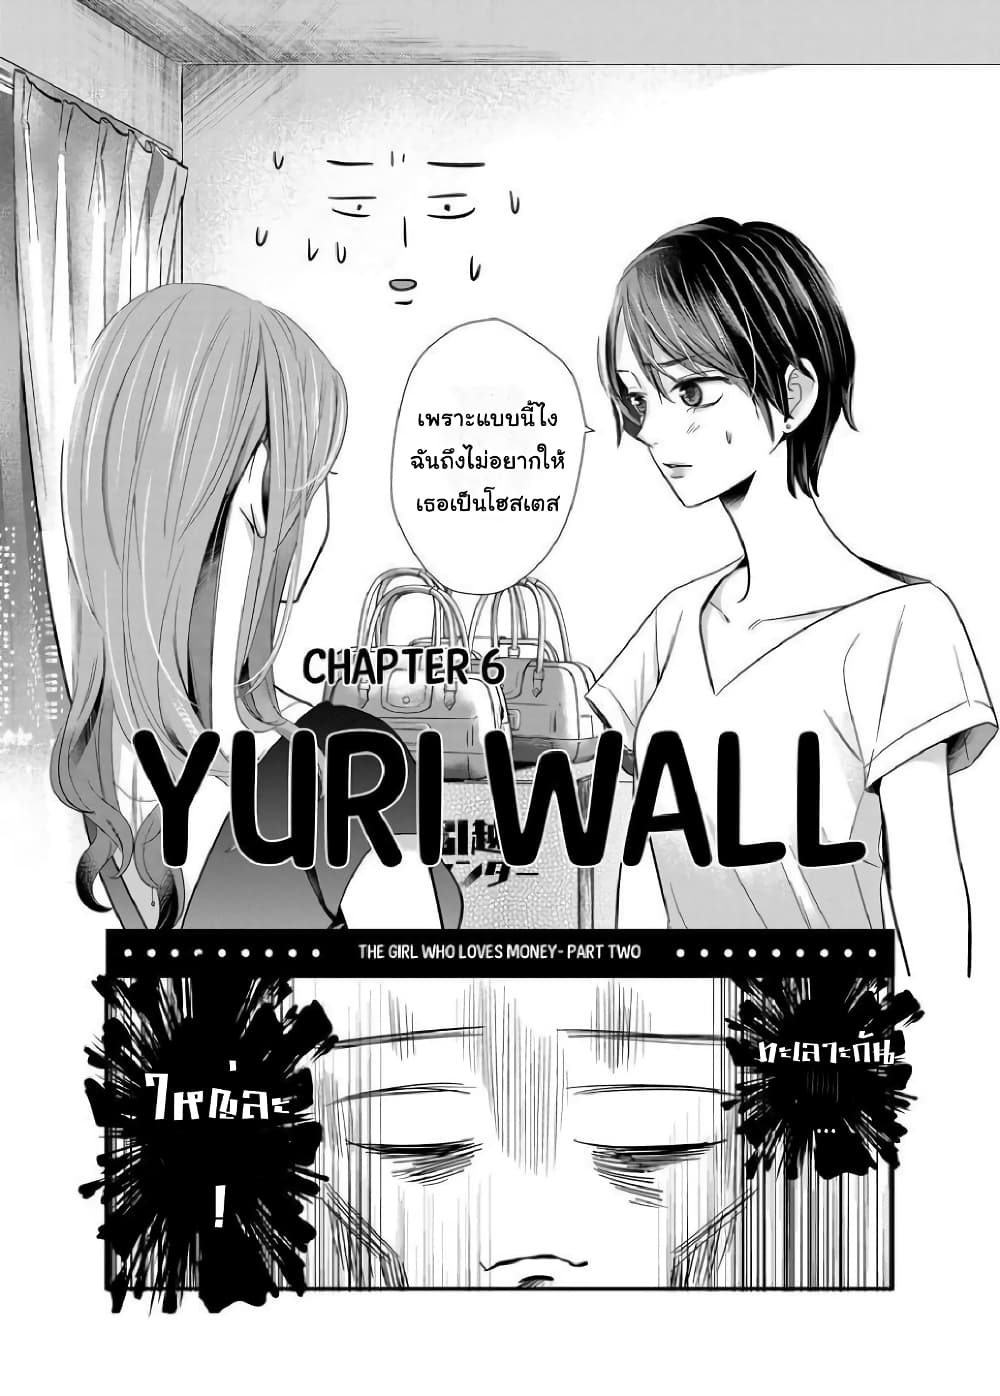 Yuri Wall 6 (3)